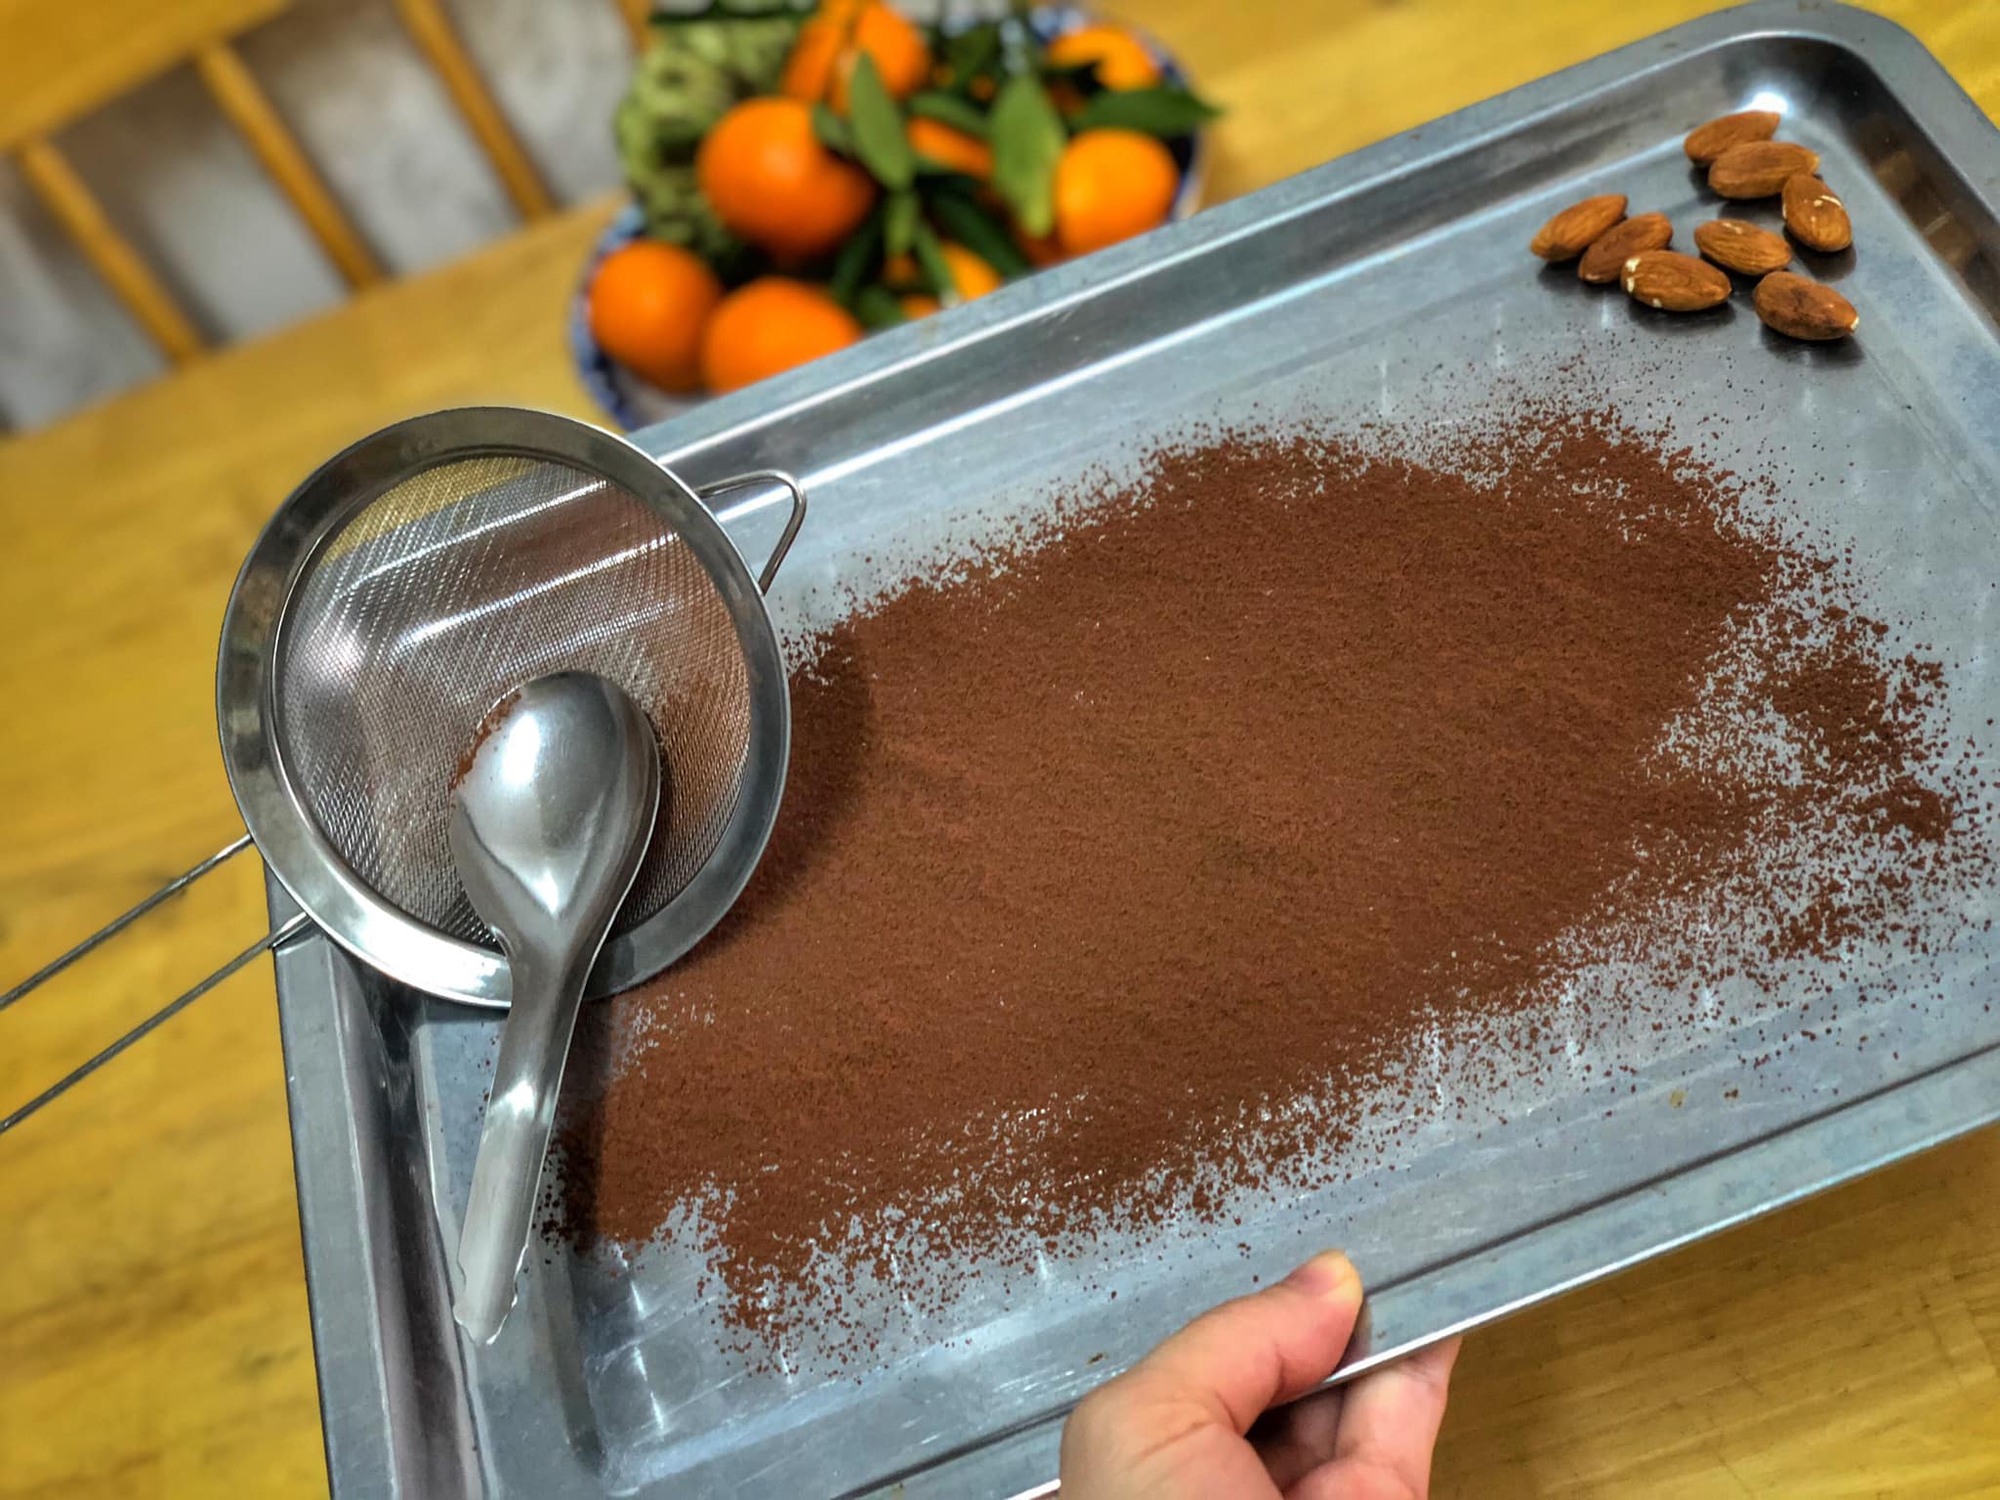 Mách bạn cách làm Chocolate cho ngày Valentine ngọt ngào - Ảnh 9.